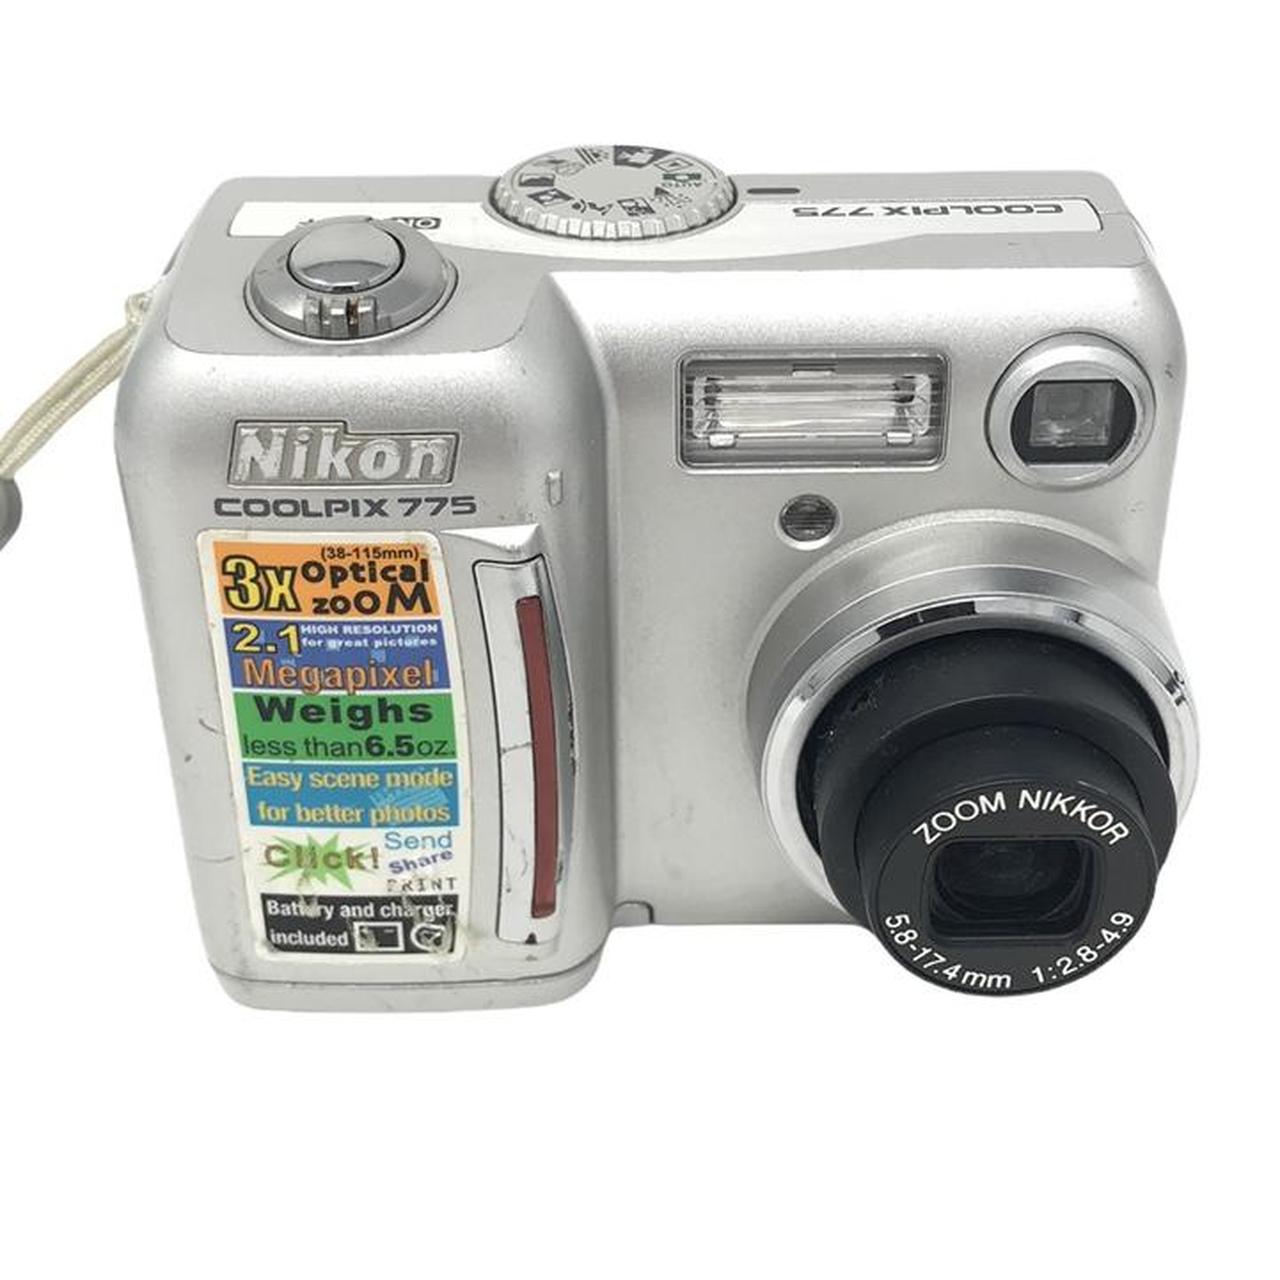 Nikon Cameras-and-accessories (2)